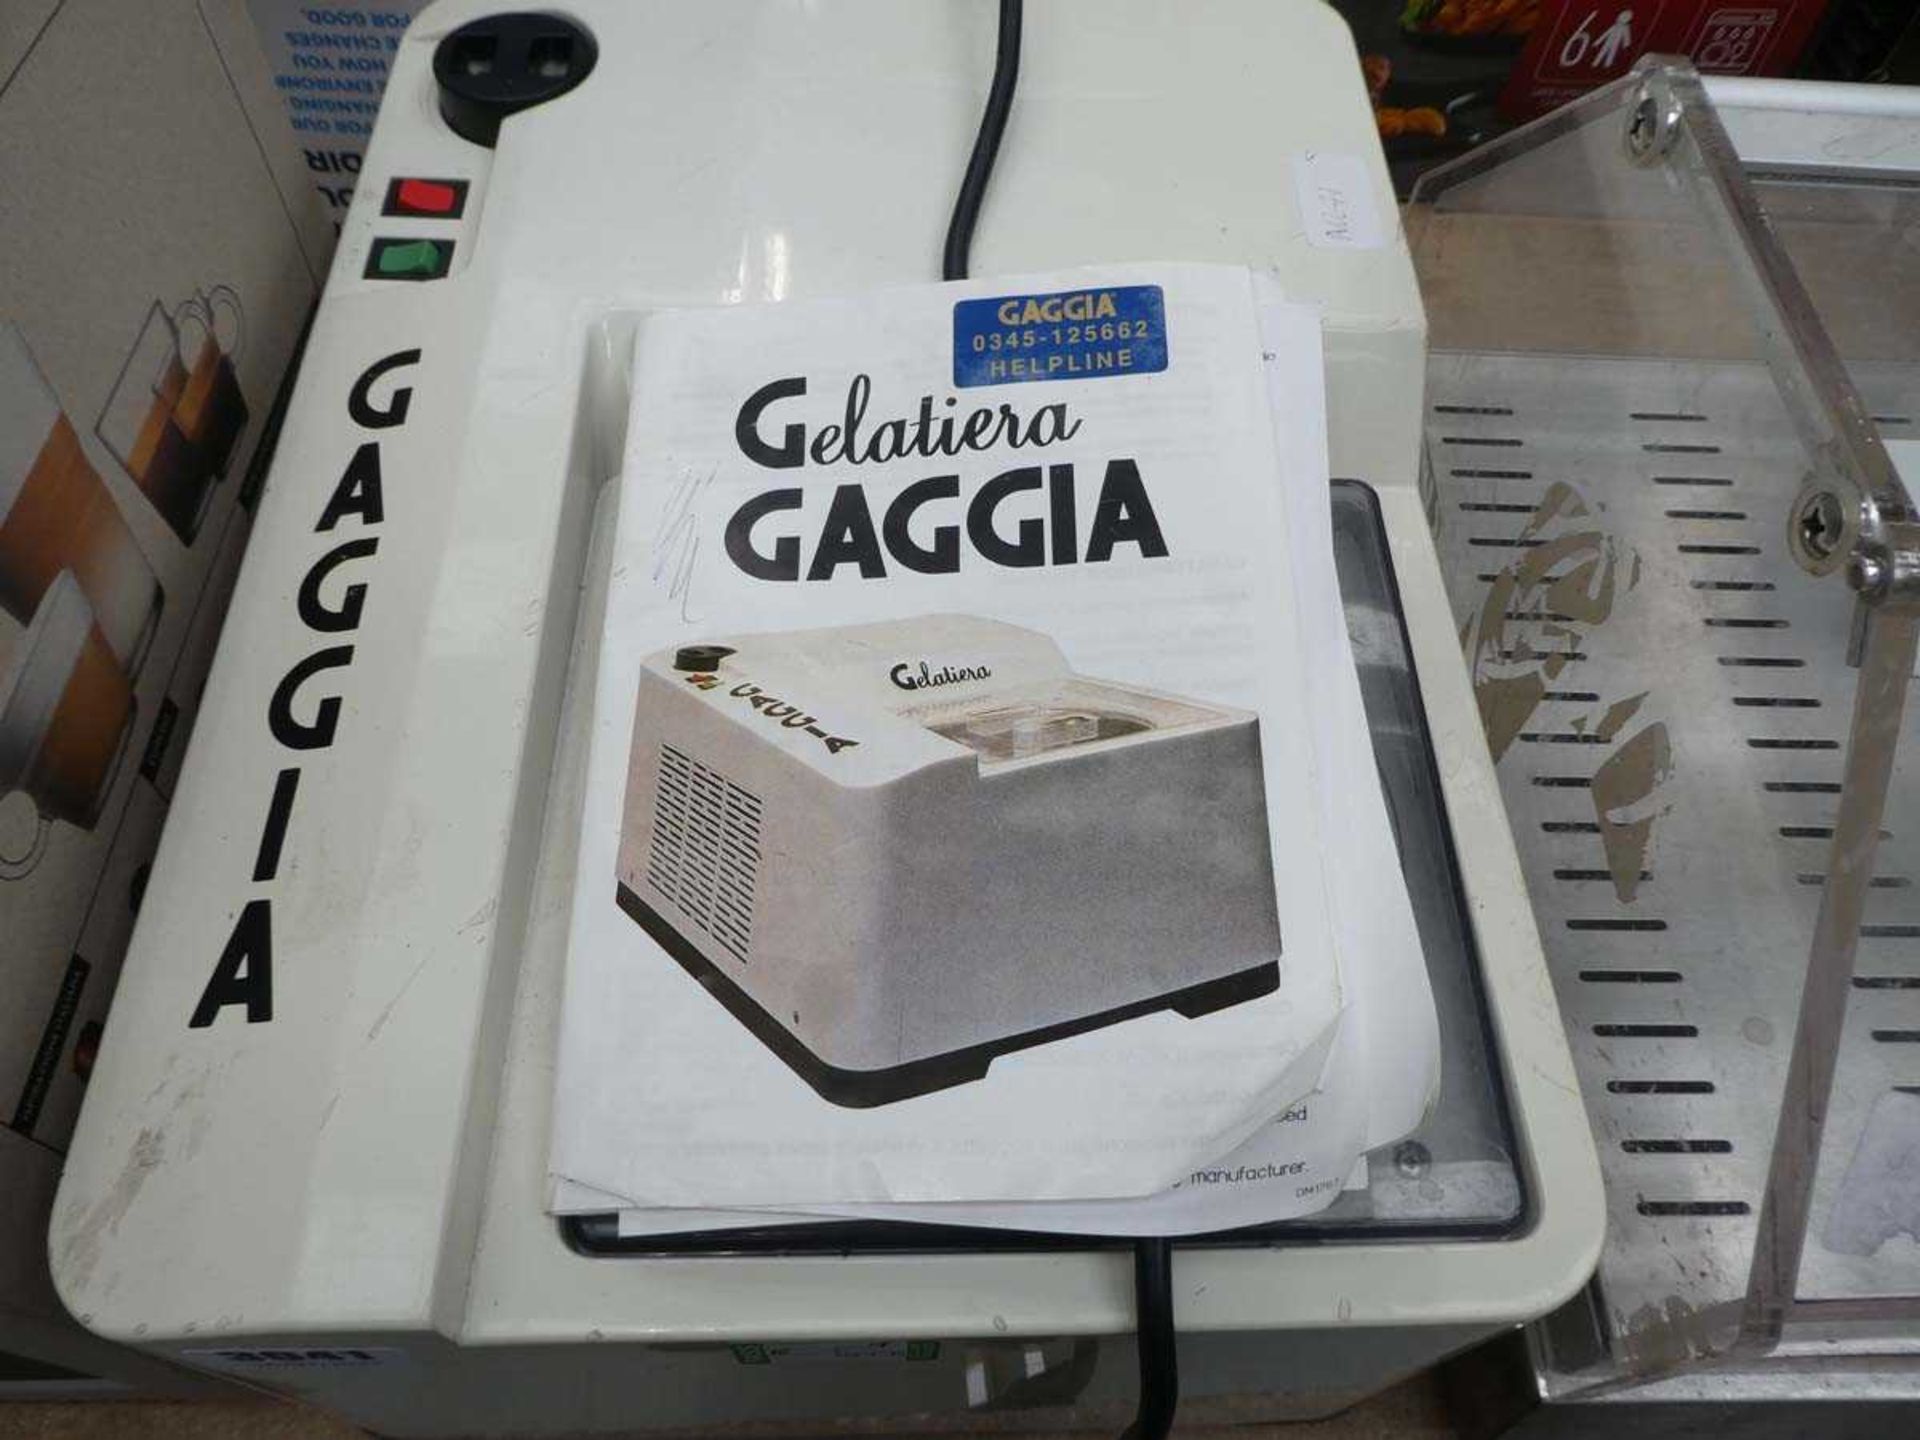 Gaggia ice cream maker - Image 2 of 2